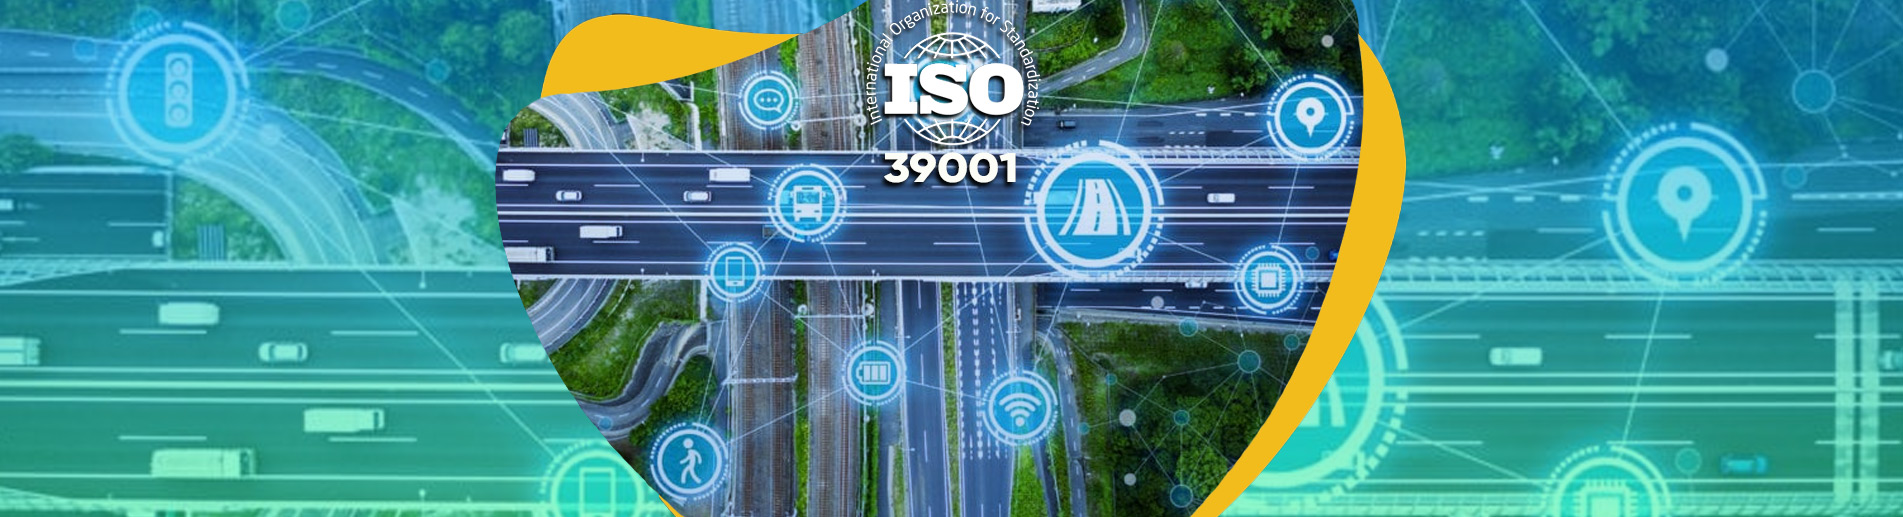 ISO 39001 Yol ve Trafik Güvenliği Yönetim Sistemi